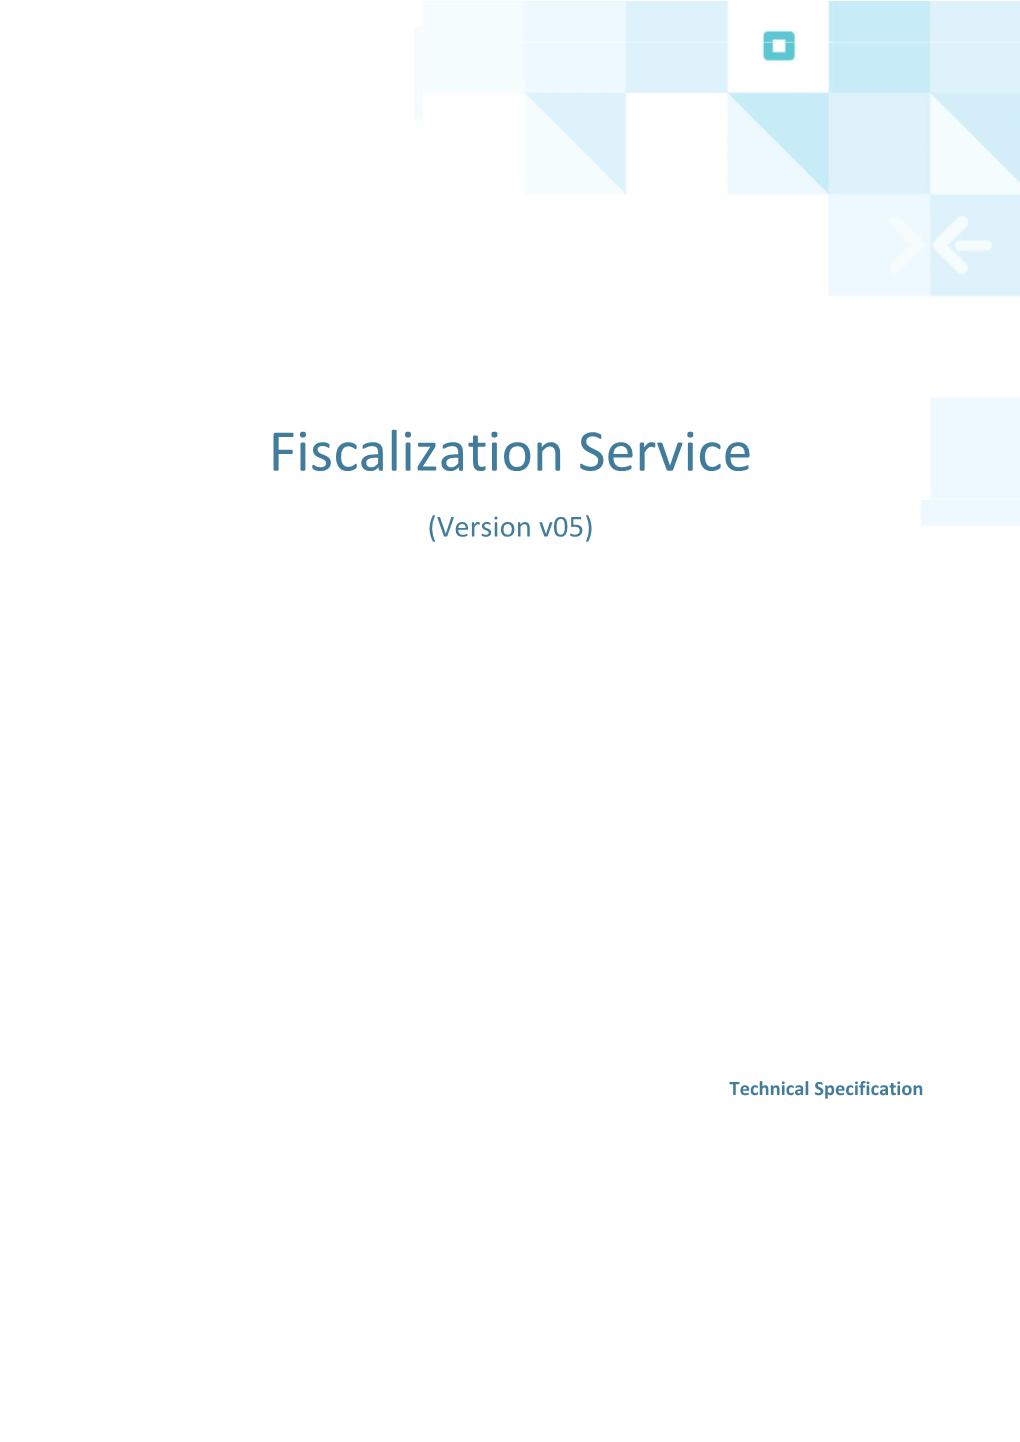 Fiscalization Service (Version V05)